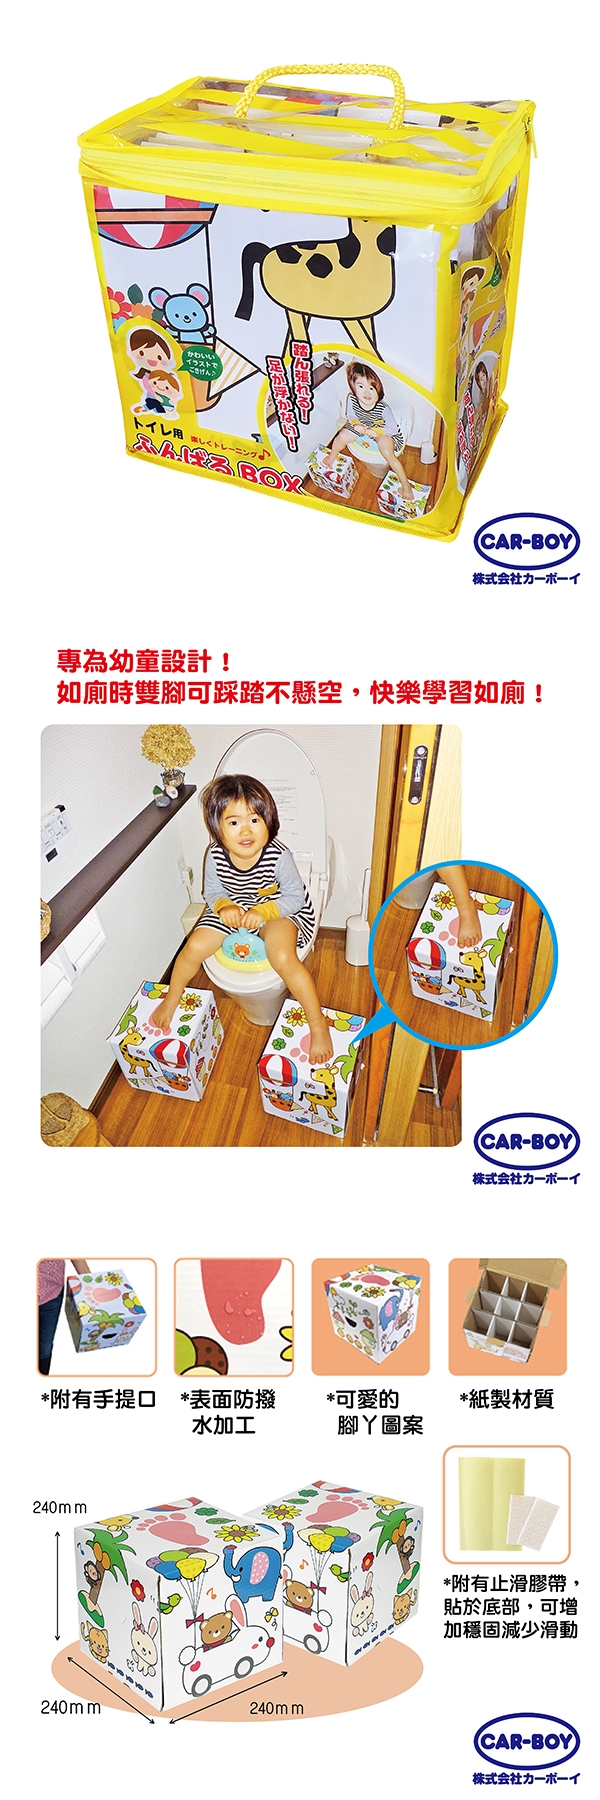 CAR-BOY-如廁用兒童腳踏箱2入(CB11299)